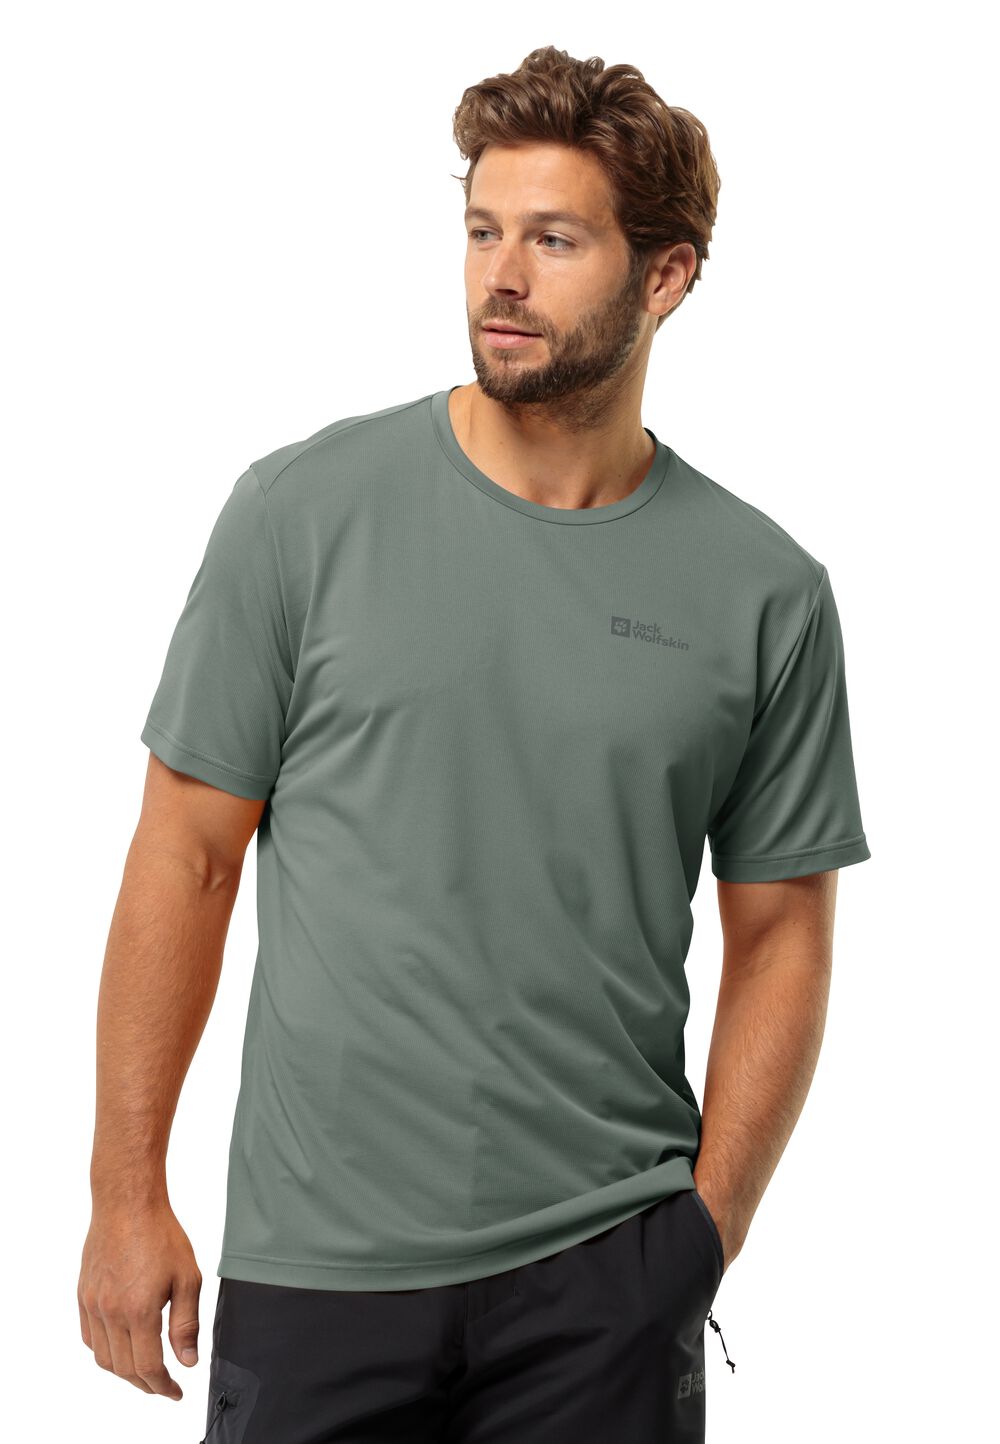 Jack Wolfskin Delgami S S Men Functioneel shirt Heren S hedge green hedge green